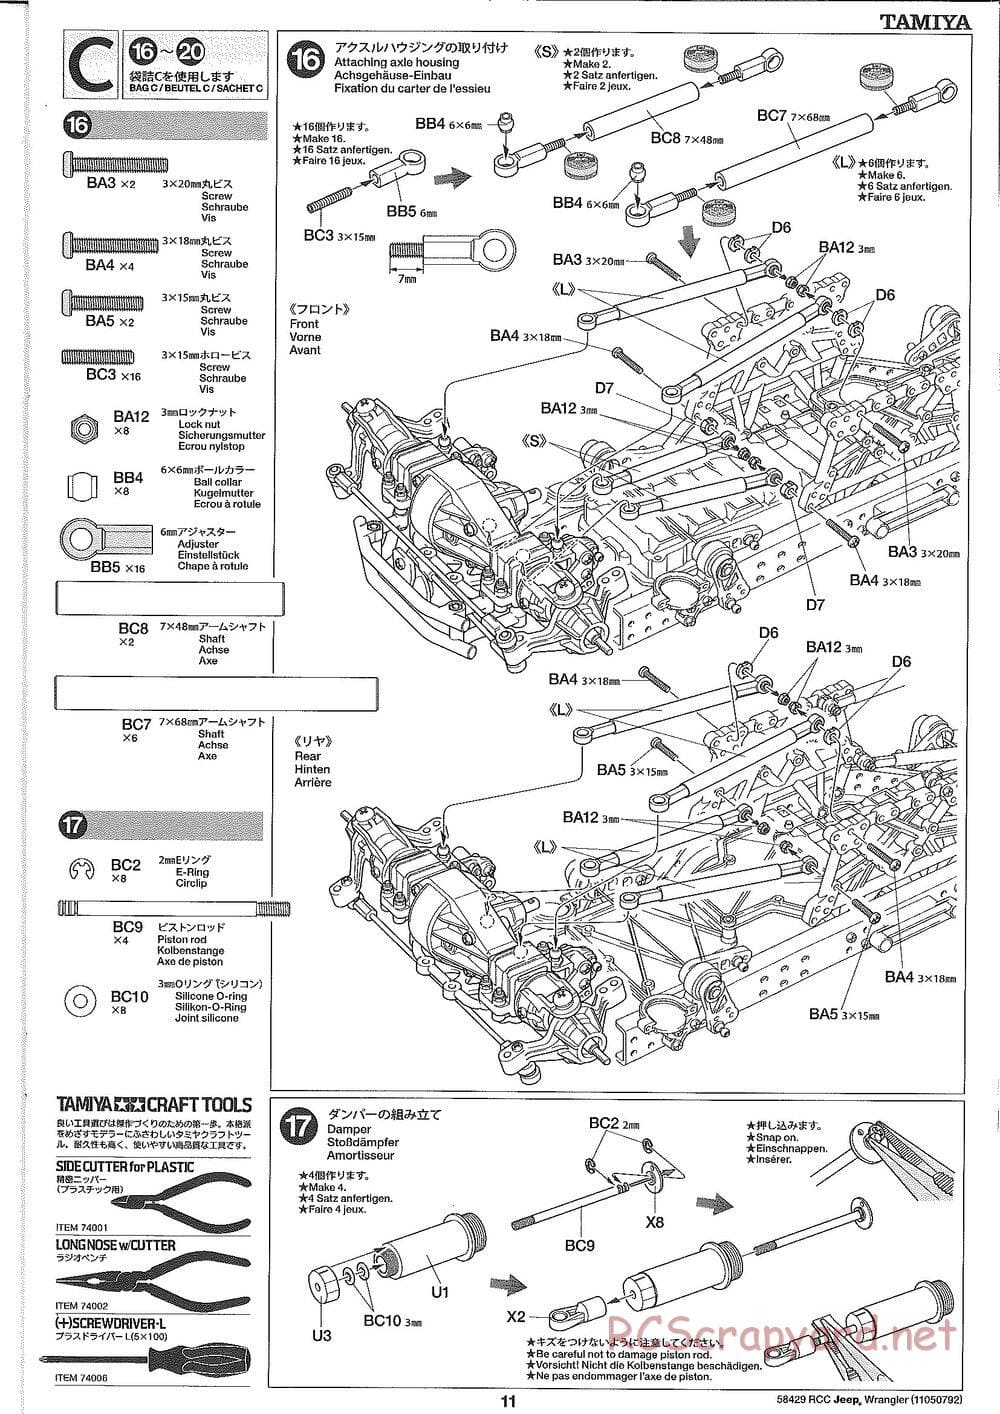 Tamiya - Jeep Wrangler - CR-01 Chassis - Manual - Page 11